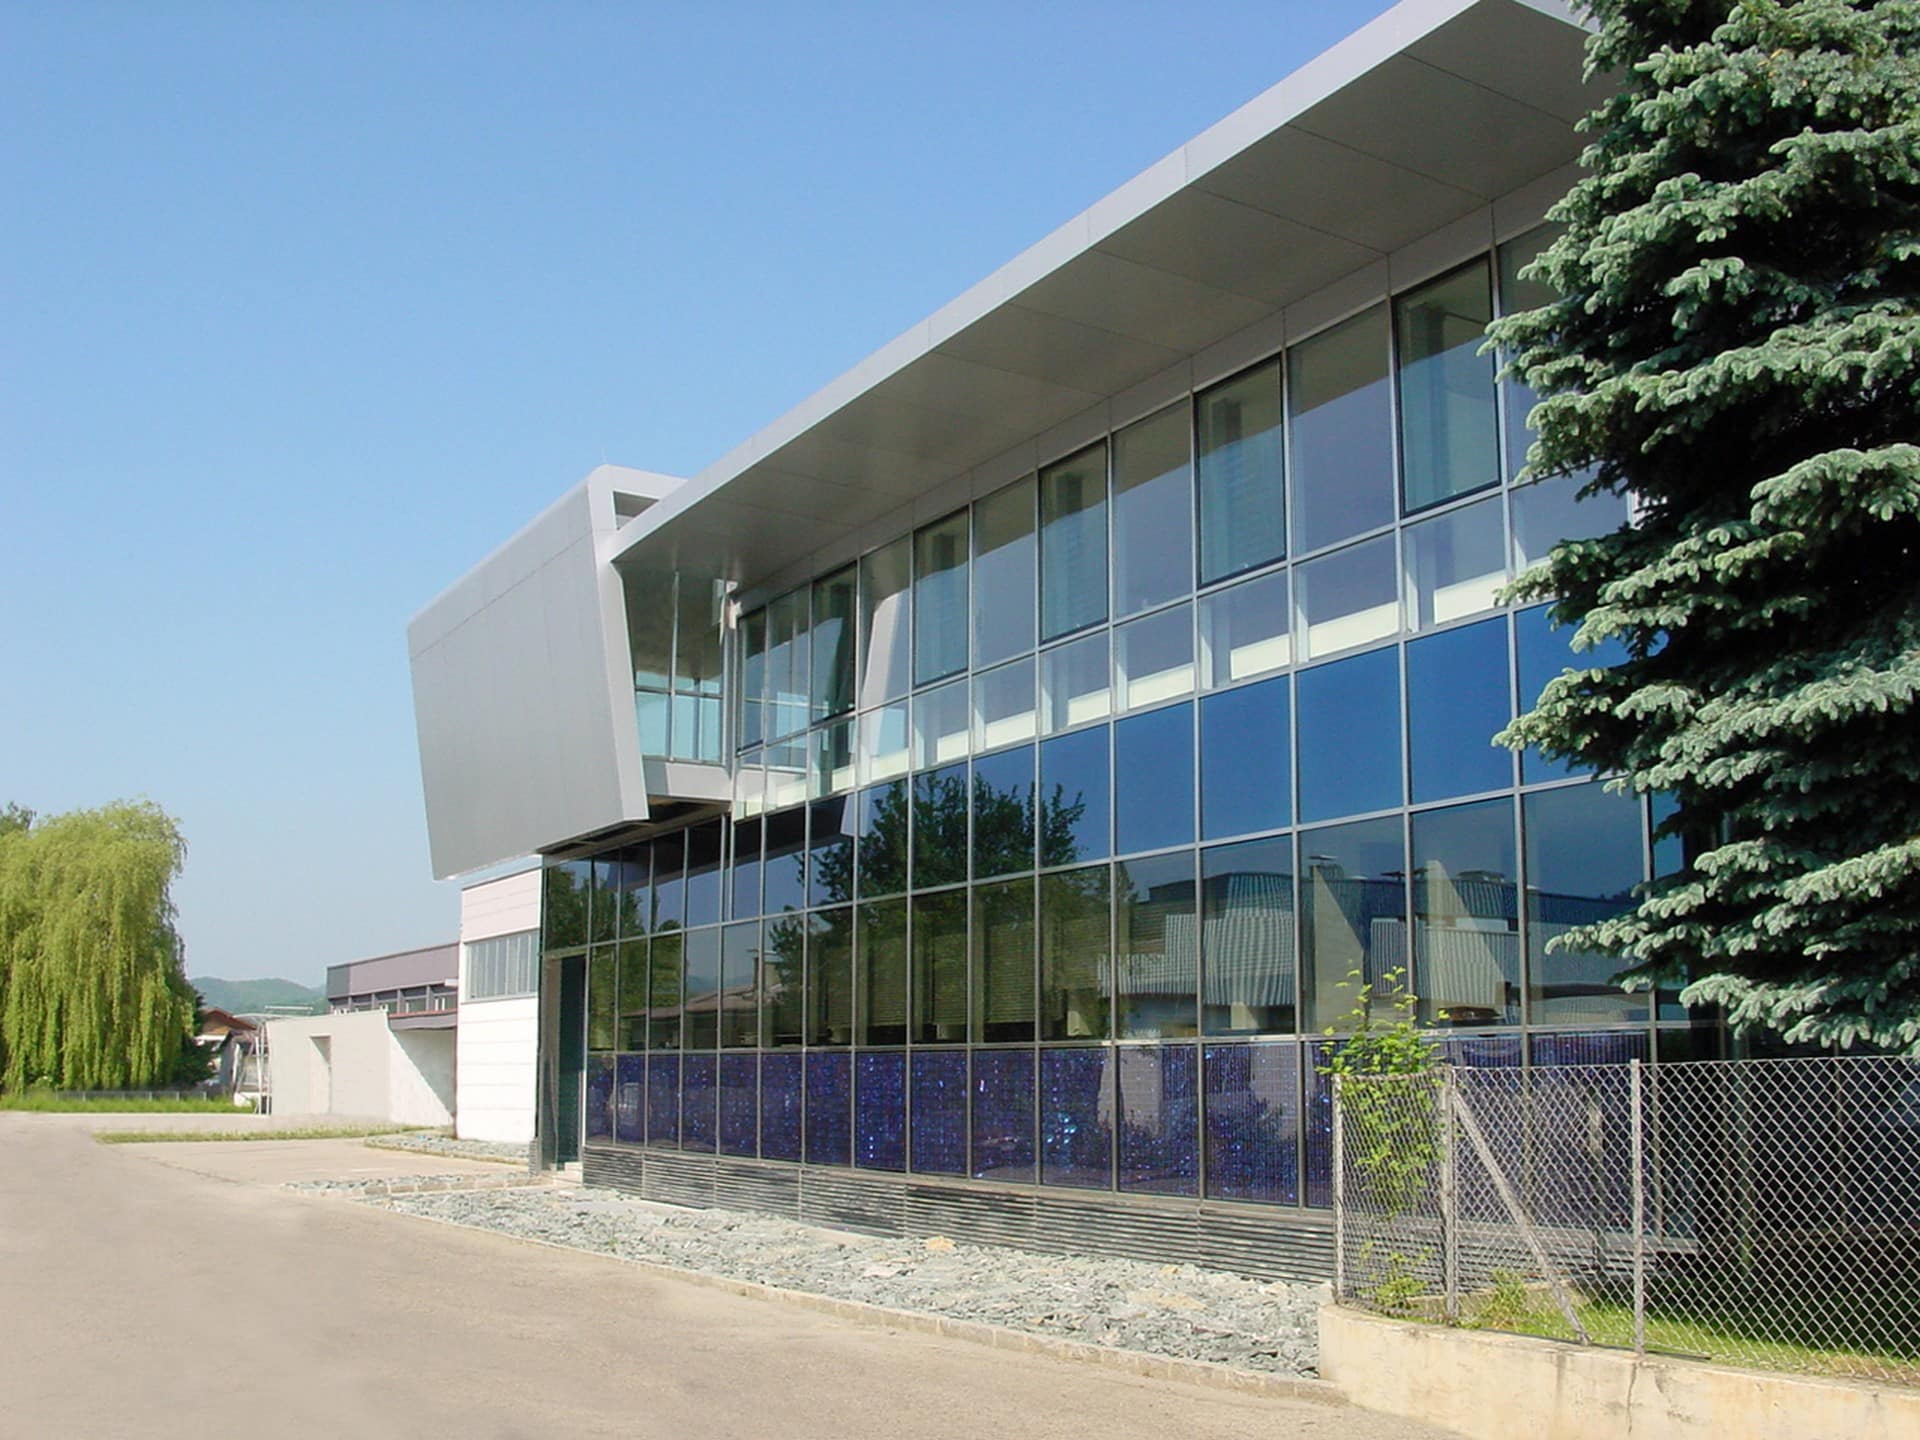 Sauritschnig Alu-Stahl-Glas GesmbH, Verdoppelung der Bürofläche durch Aufstockung auf den Bestand